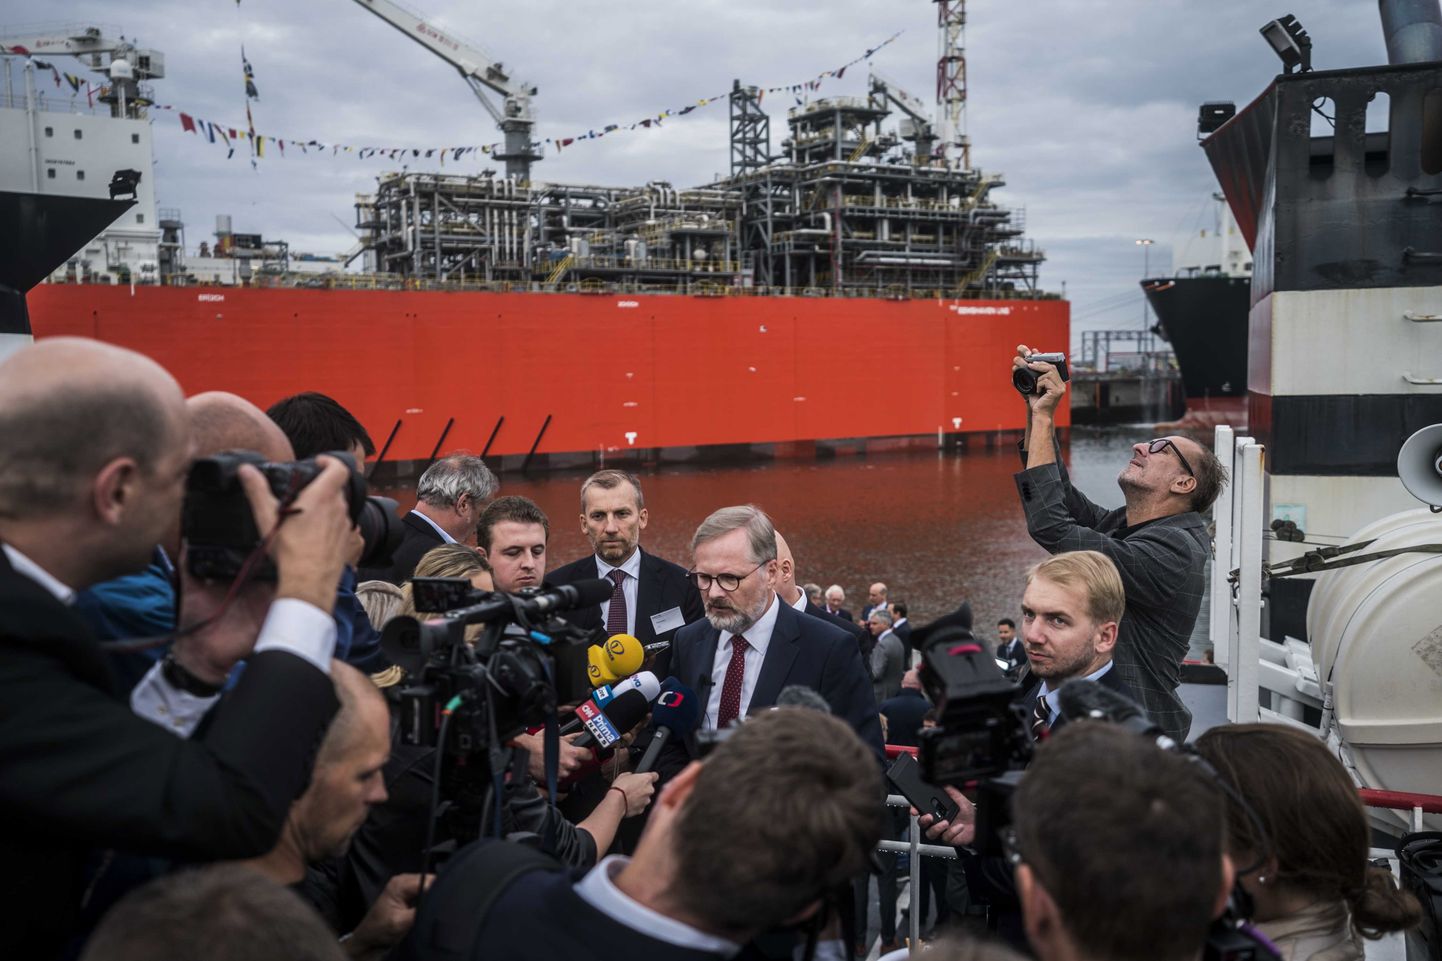 Esimest Eemshaveni sadama uude LNG terminali sildunud LNG tankerit oli tervitama tulnud Tšehhi Vabariigi peaminister Petr Fiala, kes samuti soovib vähendada riigi sõltuvust Venemaa gaasist.  EPA/SIESE VEENSTRA